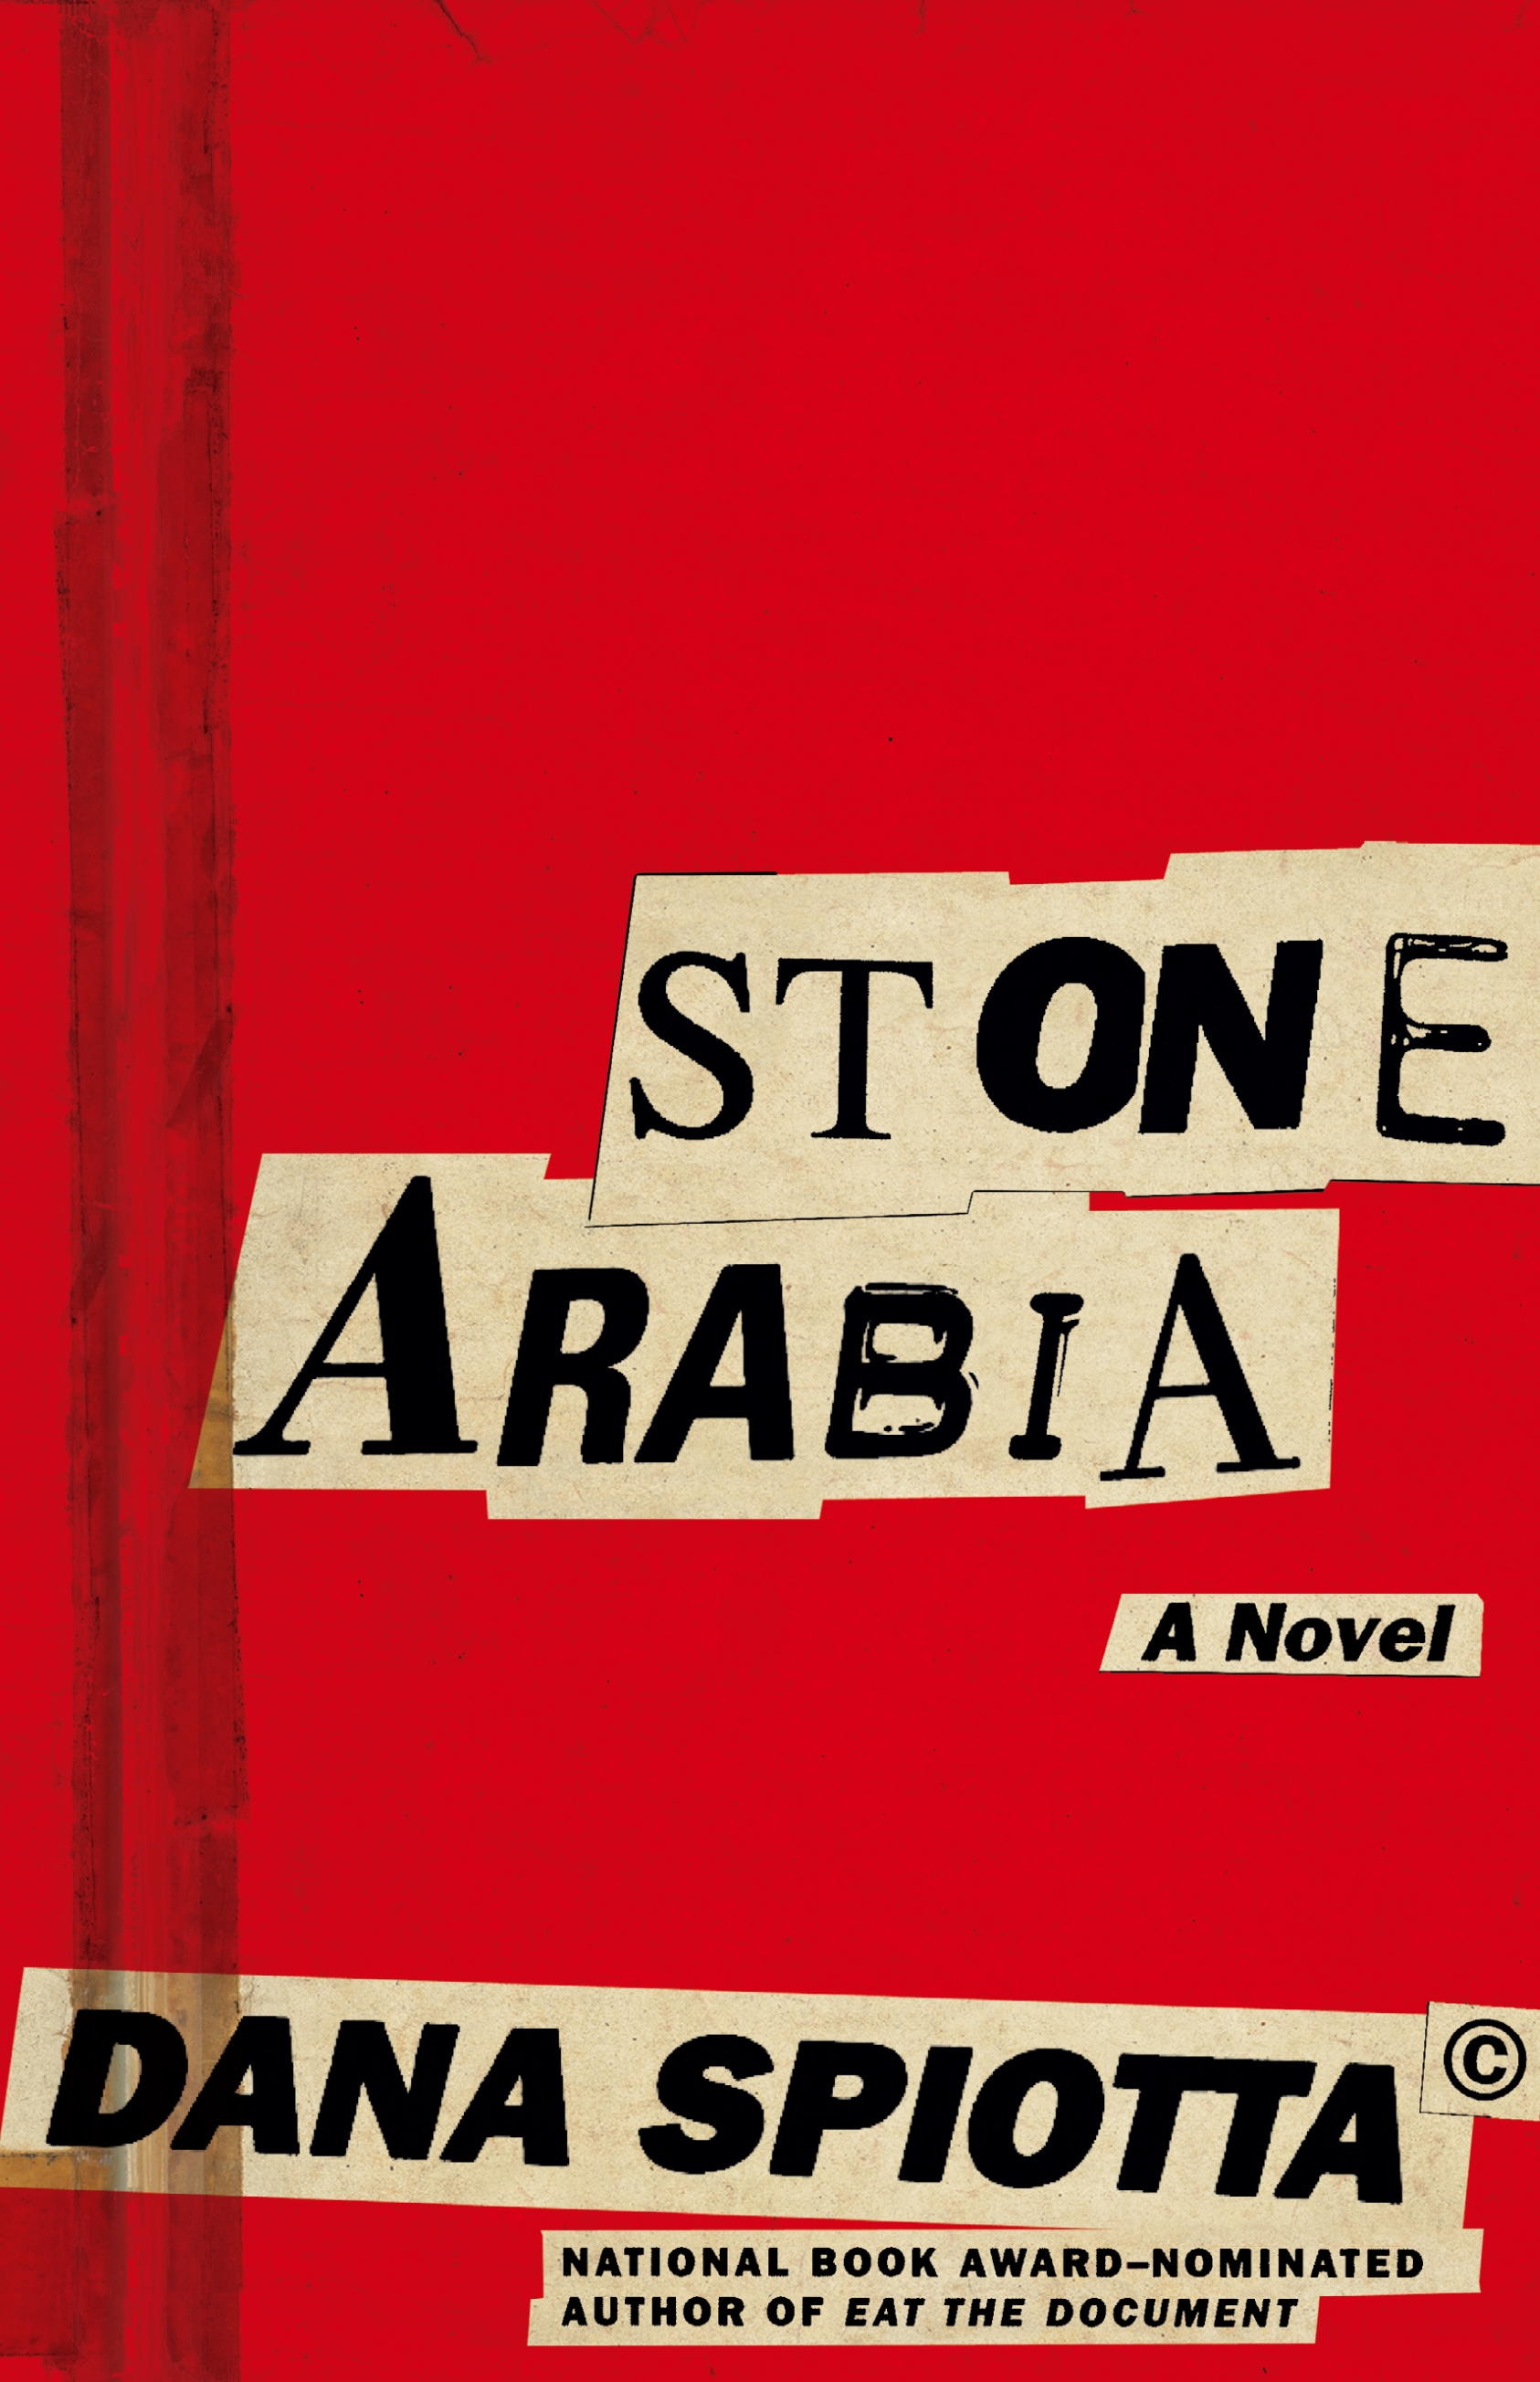 Stone Arabia, by author Dana Spiotta